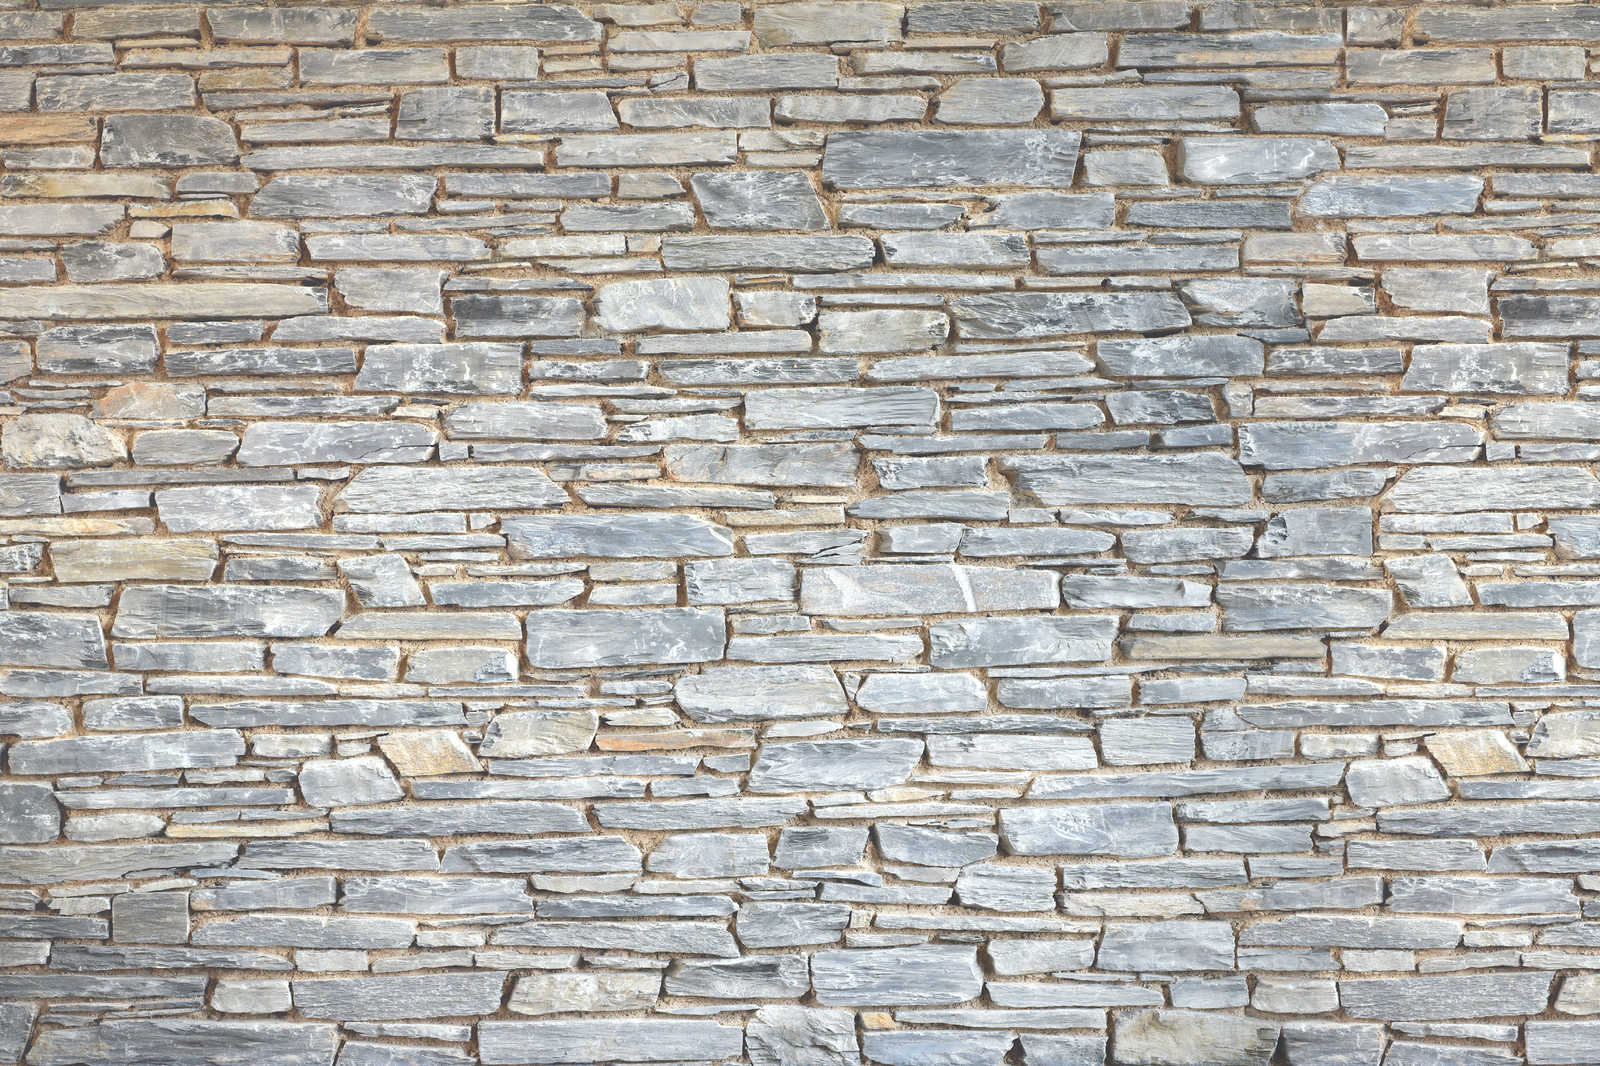             Mur de pierre toile claire aspect pierre naturelle grise - 1,20 m x 0,80 m
        